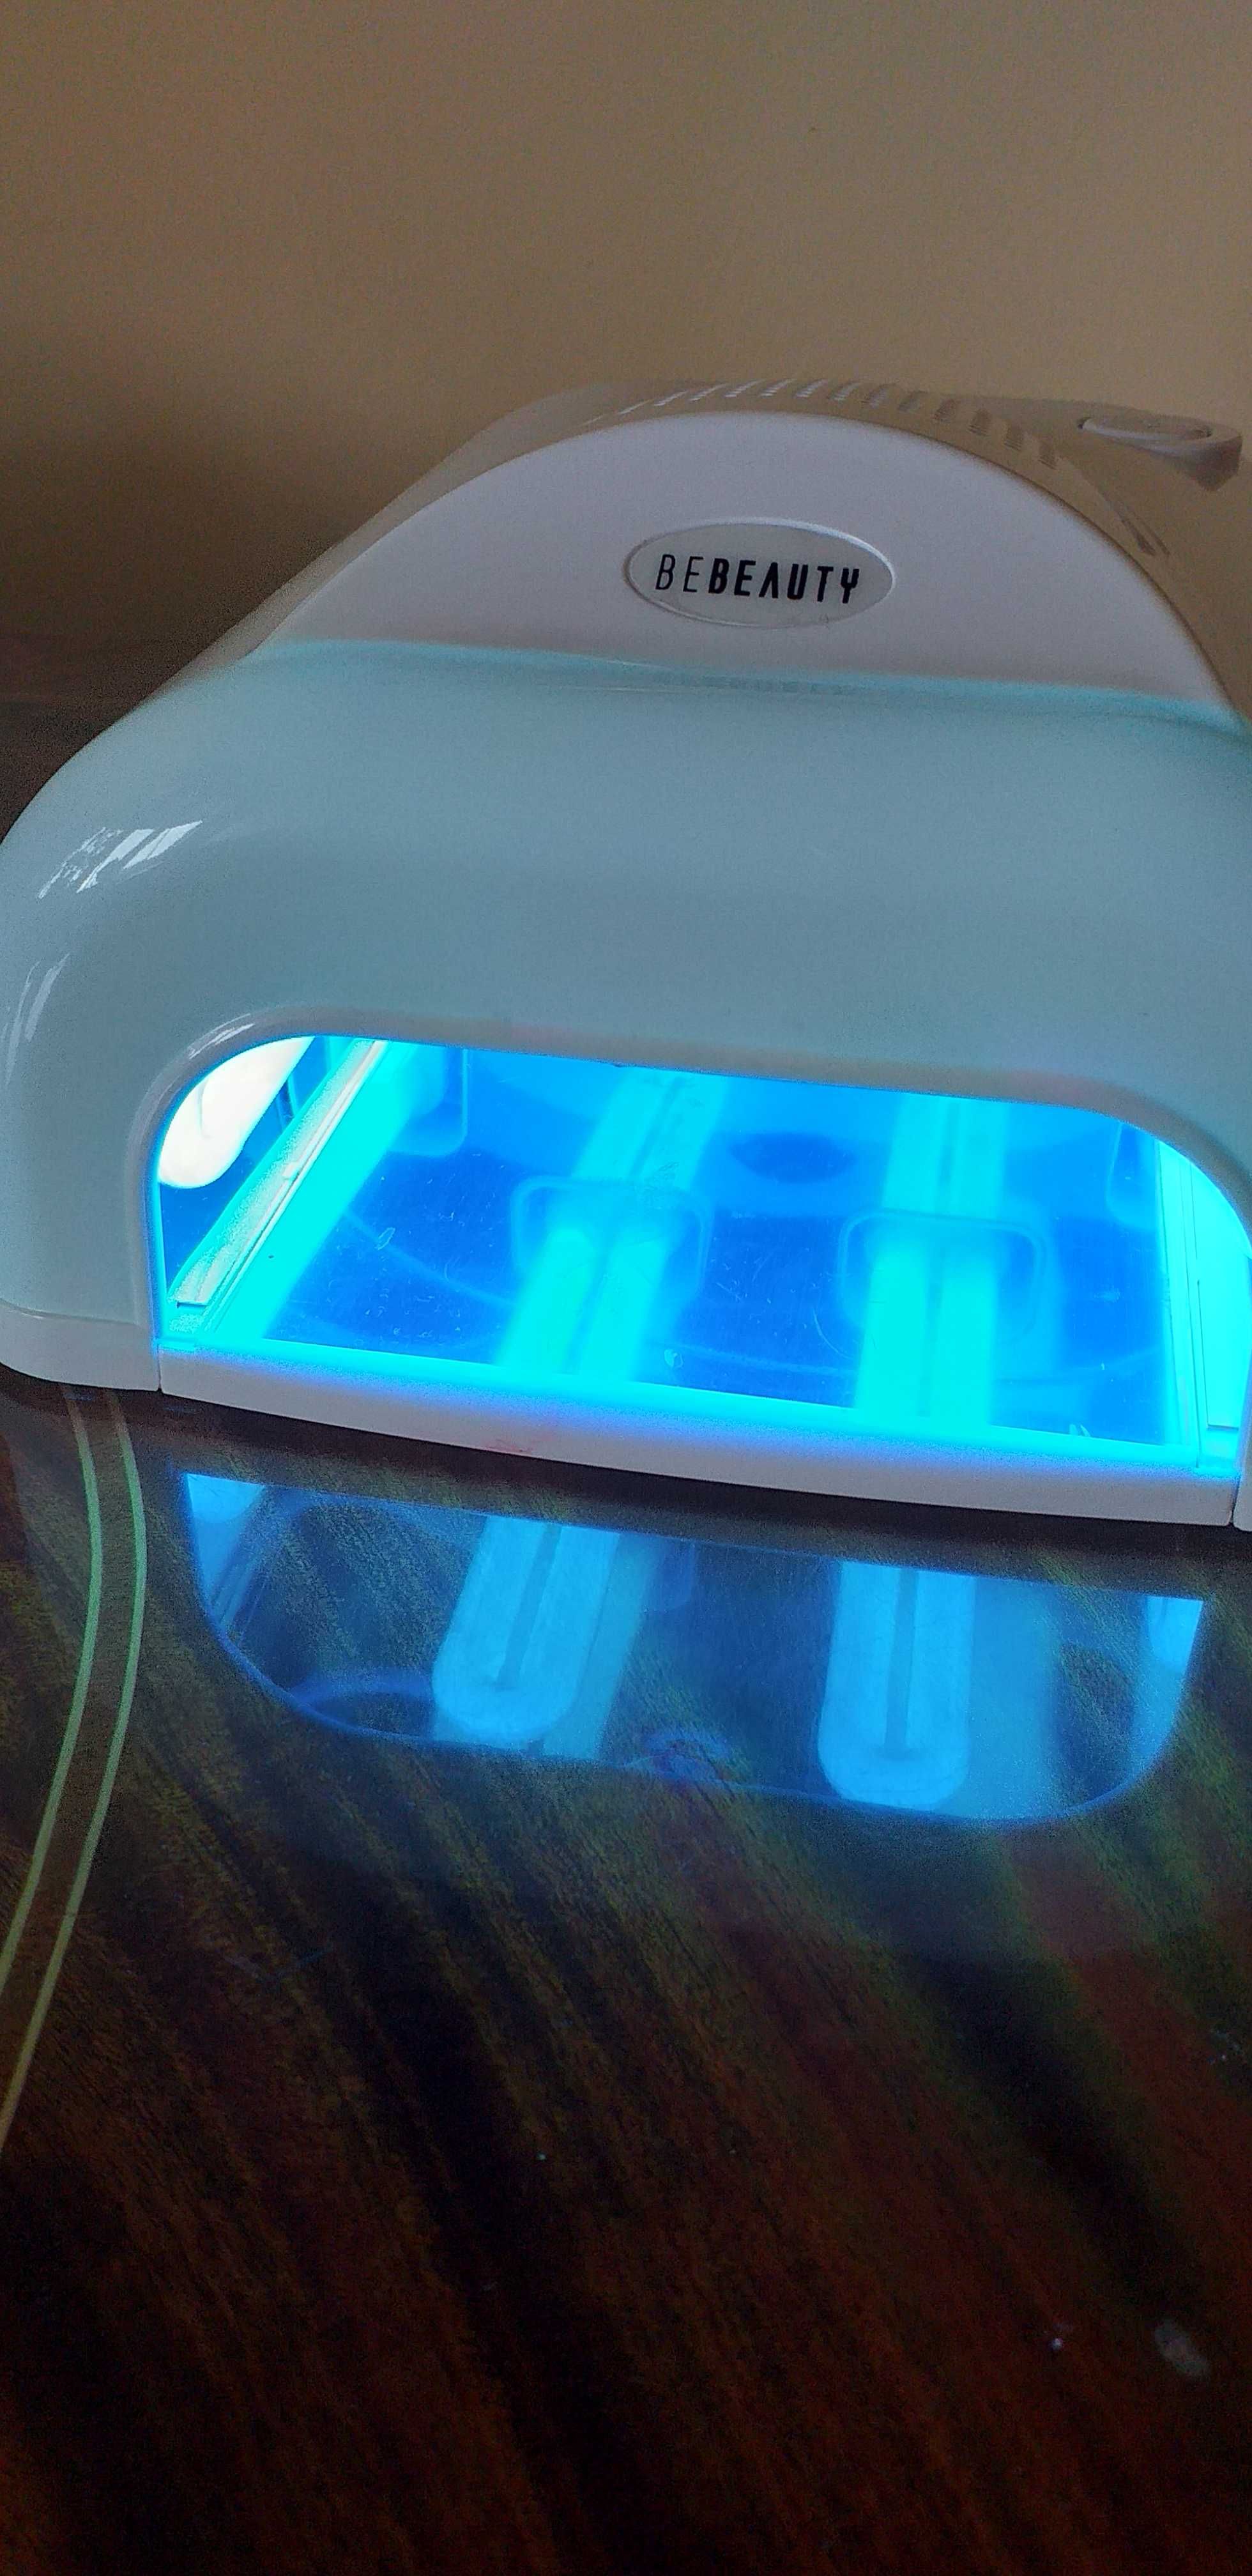 Lampa UV do utwardzania lakieru hybrydowego i żelowego na paznokciach